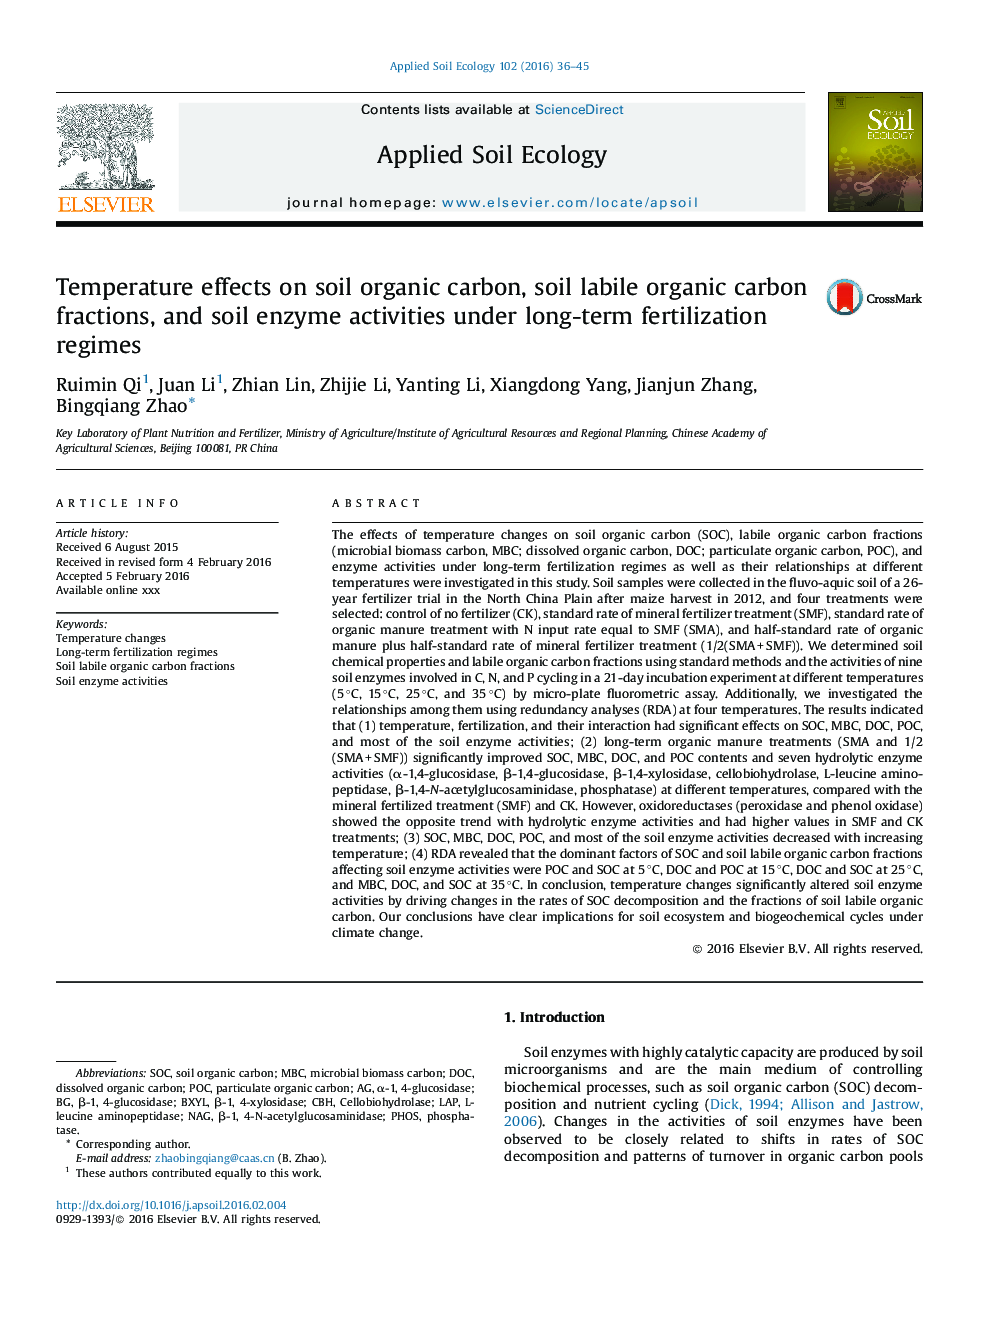 Temperature effects on soil organic carbon, soil labile organic carbon fractions, and soil enzyme activities under long-term fertilization regimes